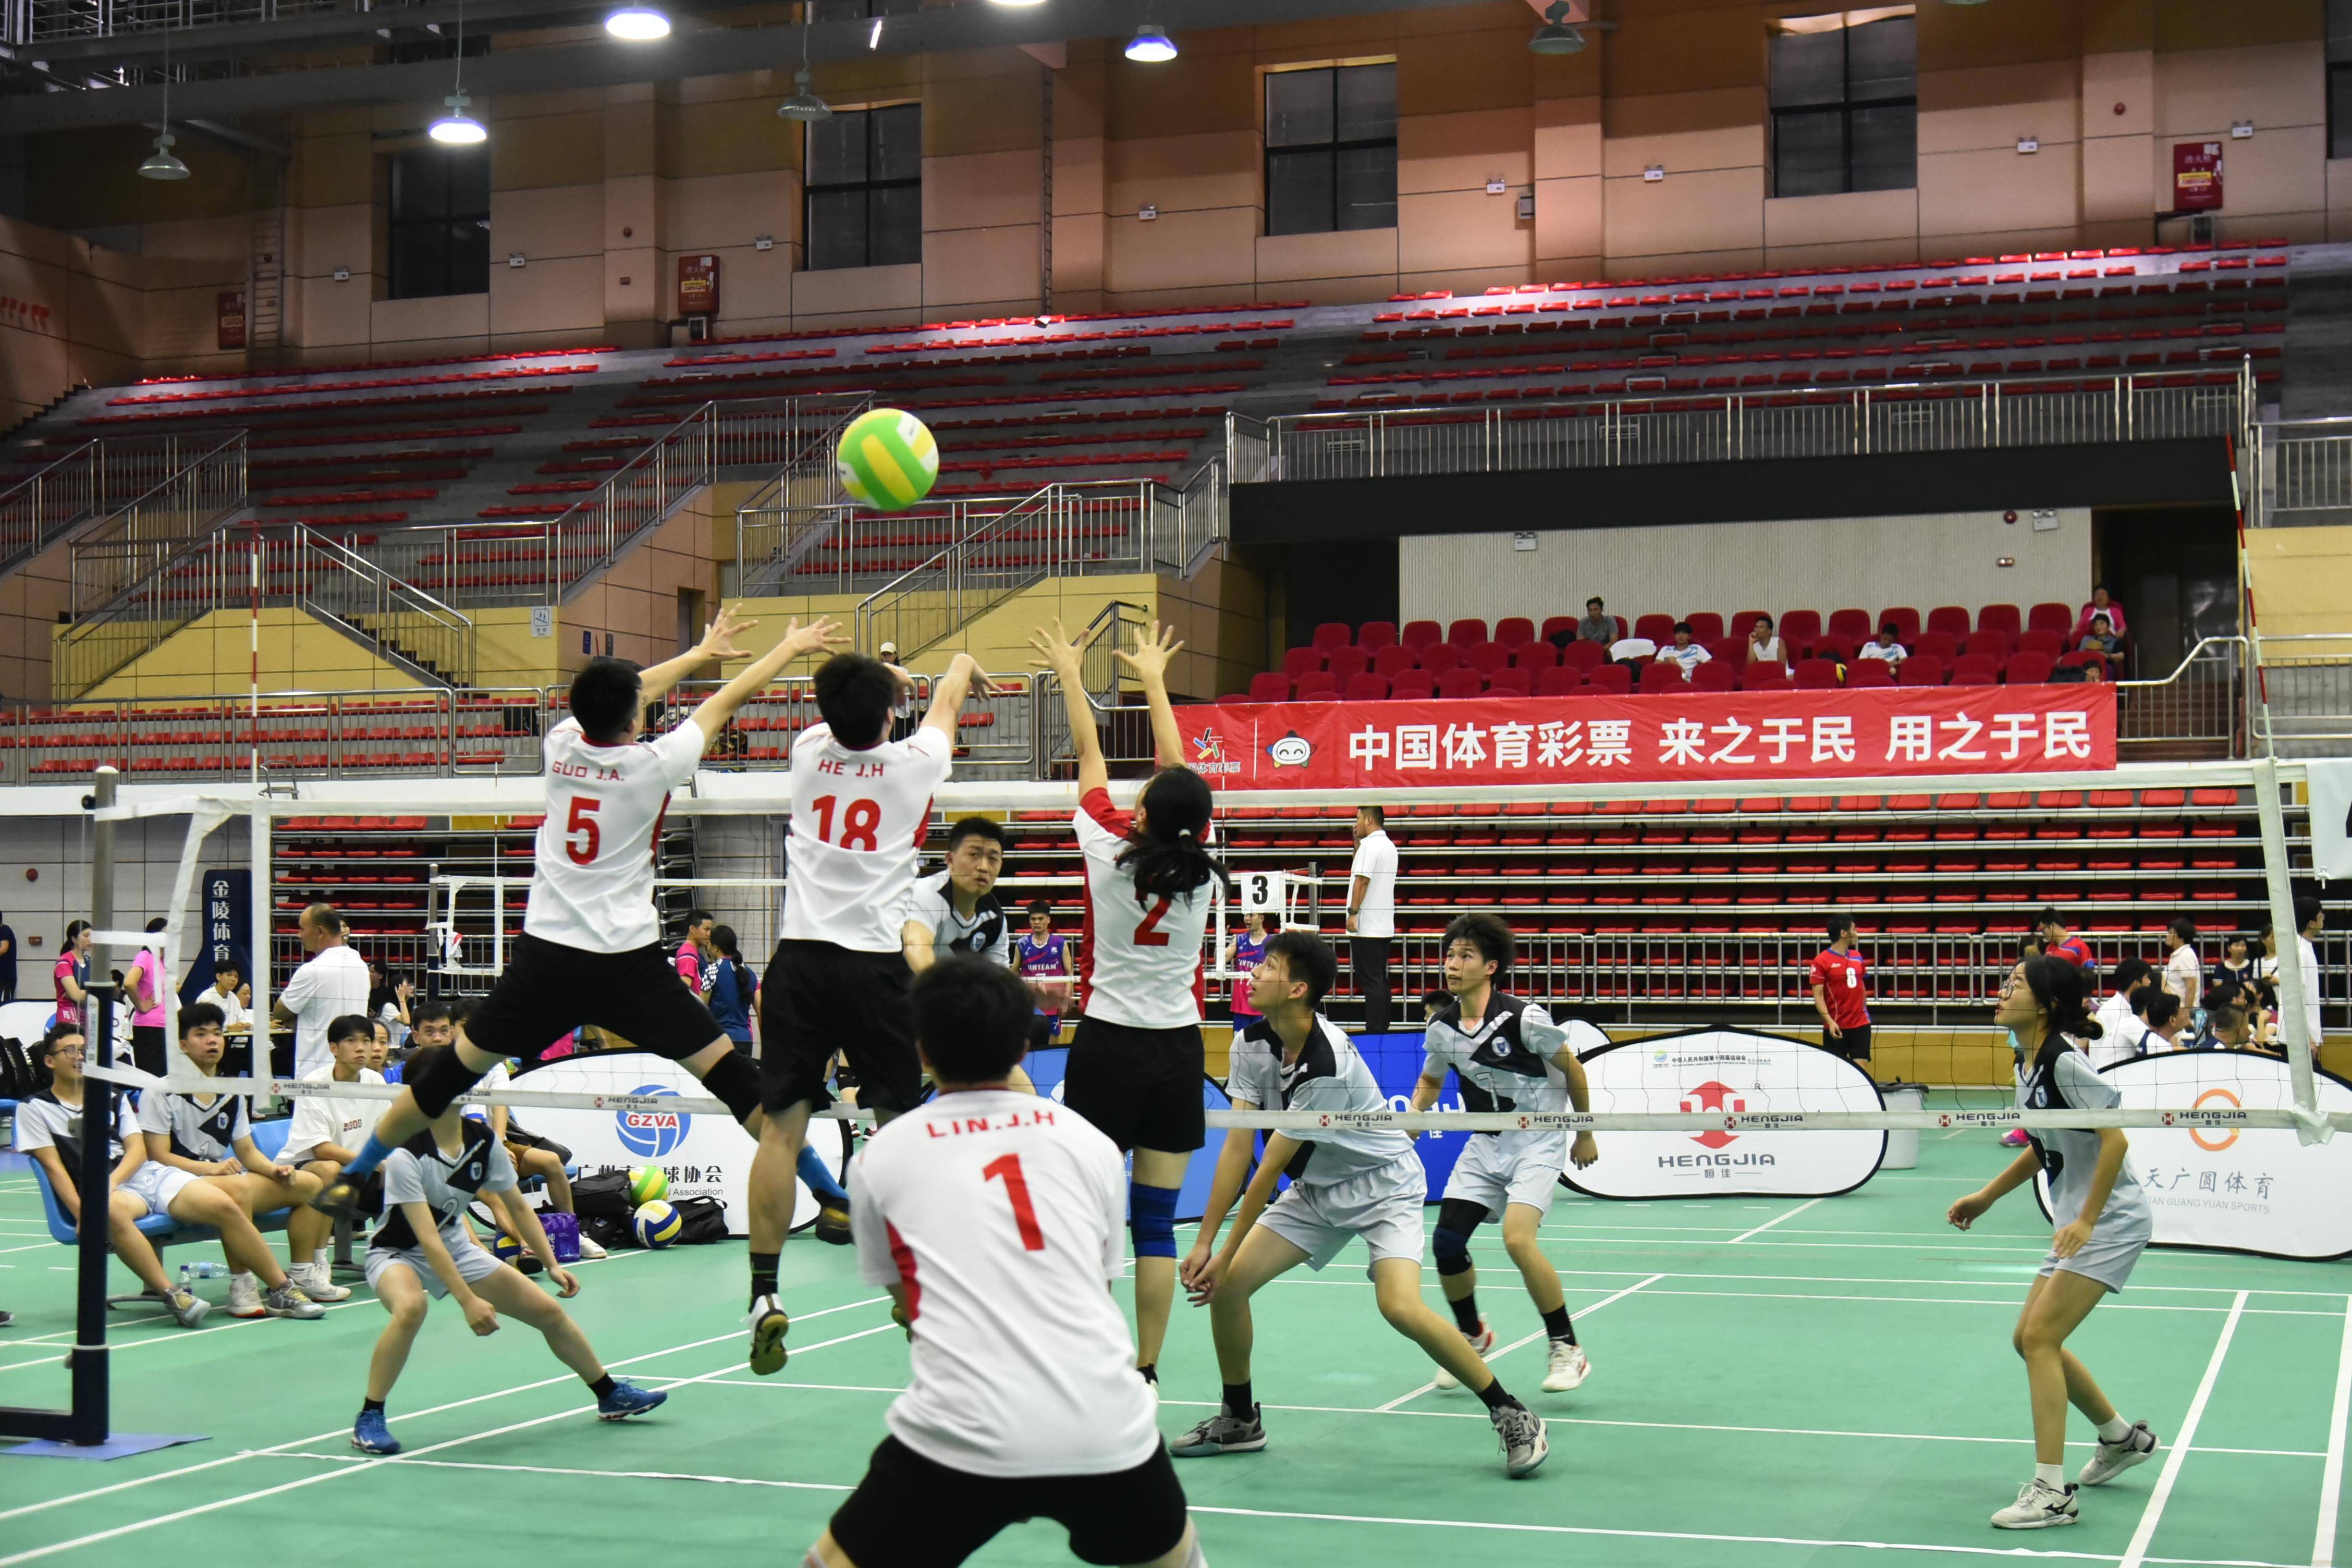 168热点-广州市第七届气排球公开赛落幕